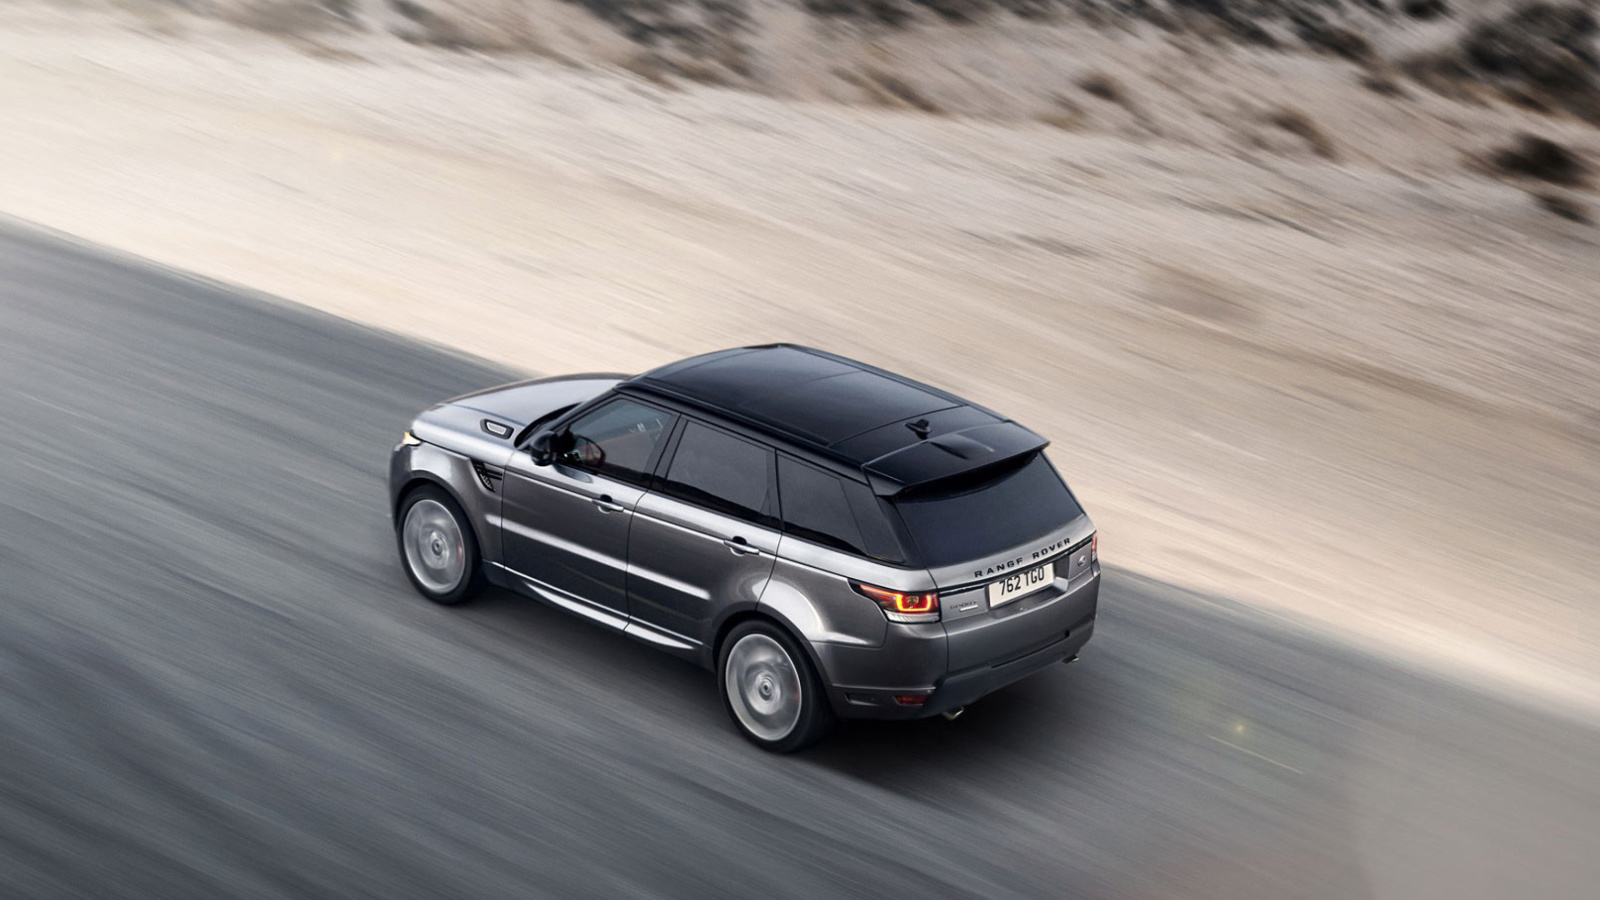 Das Land Rover Range Rover Wallpaper 1600x900